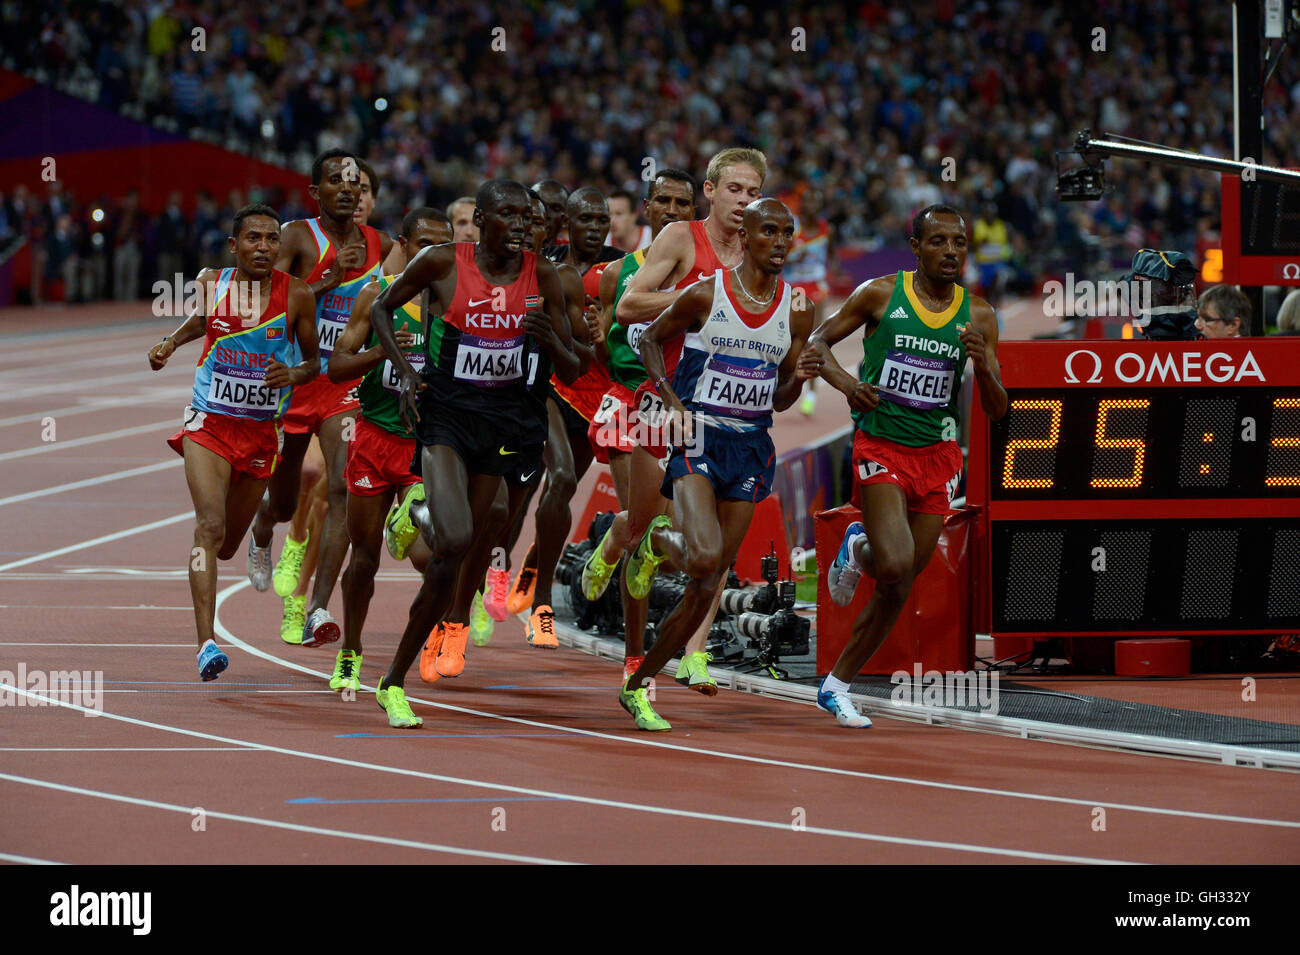 Londres 2012 - Jeux olympiques : Athlétisme - finale de 10 000 mètres.  Mohamed Farah de Grande-bretagne remportant la médaille d'or Photo Stock -  Alamy